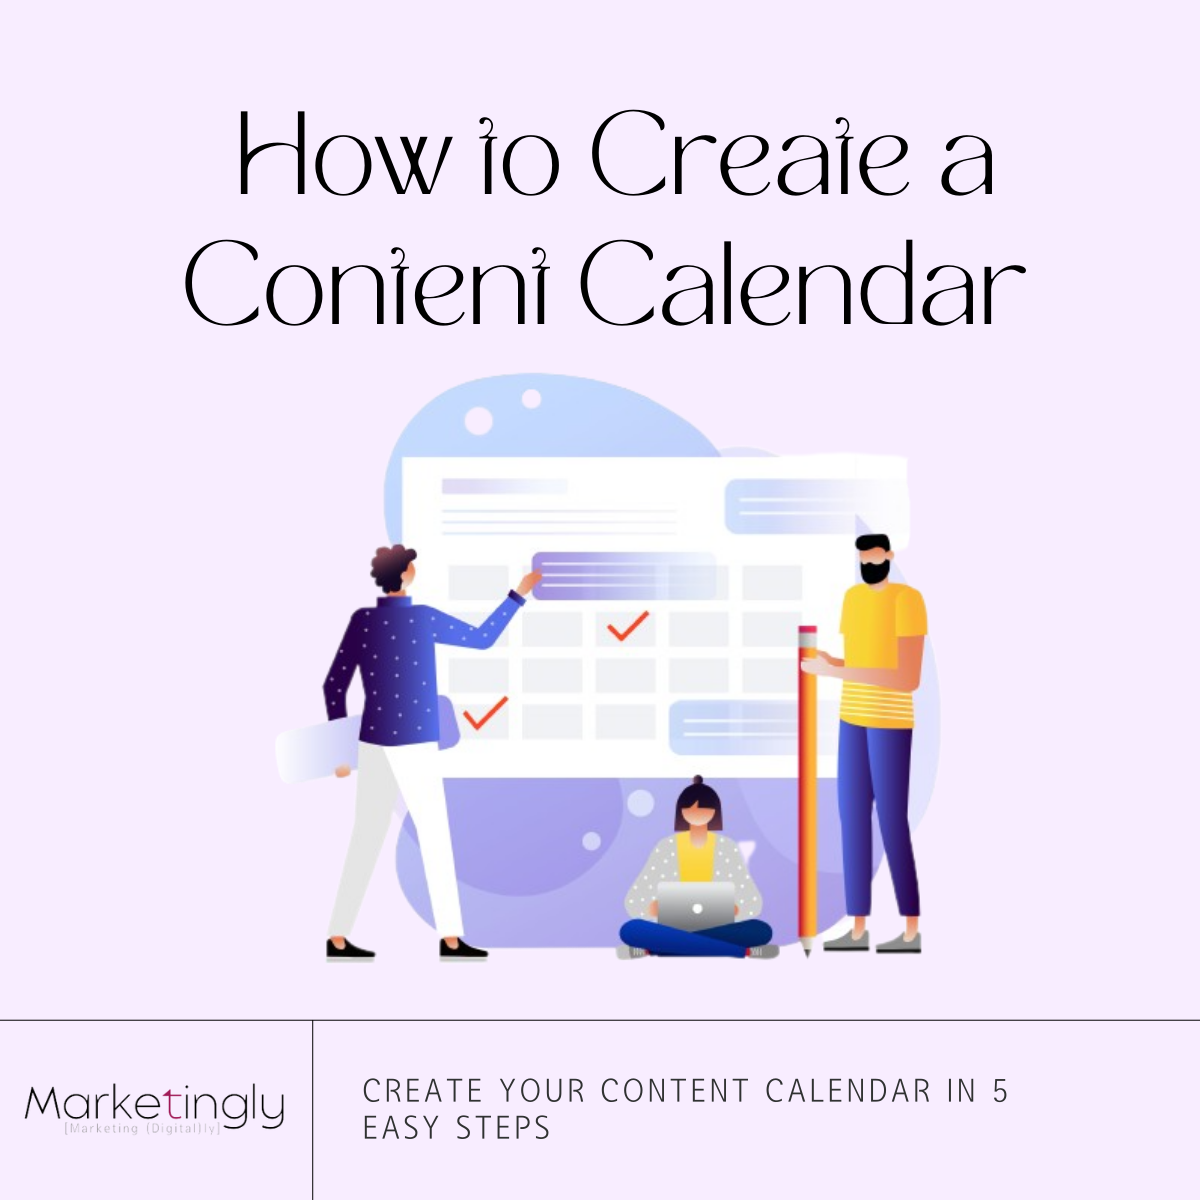 How to create a content calendar